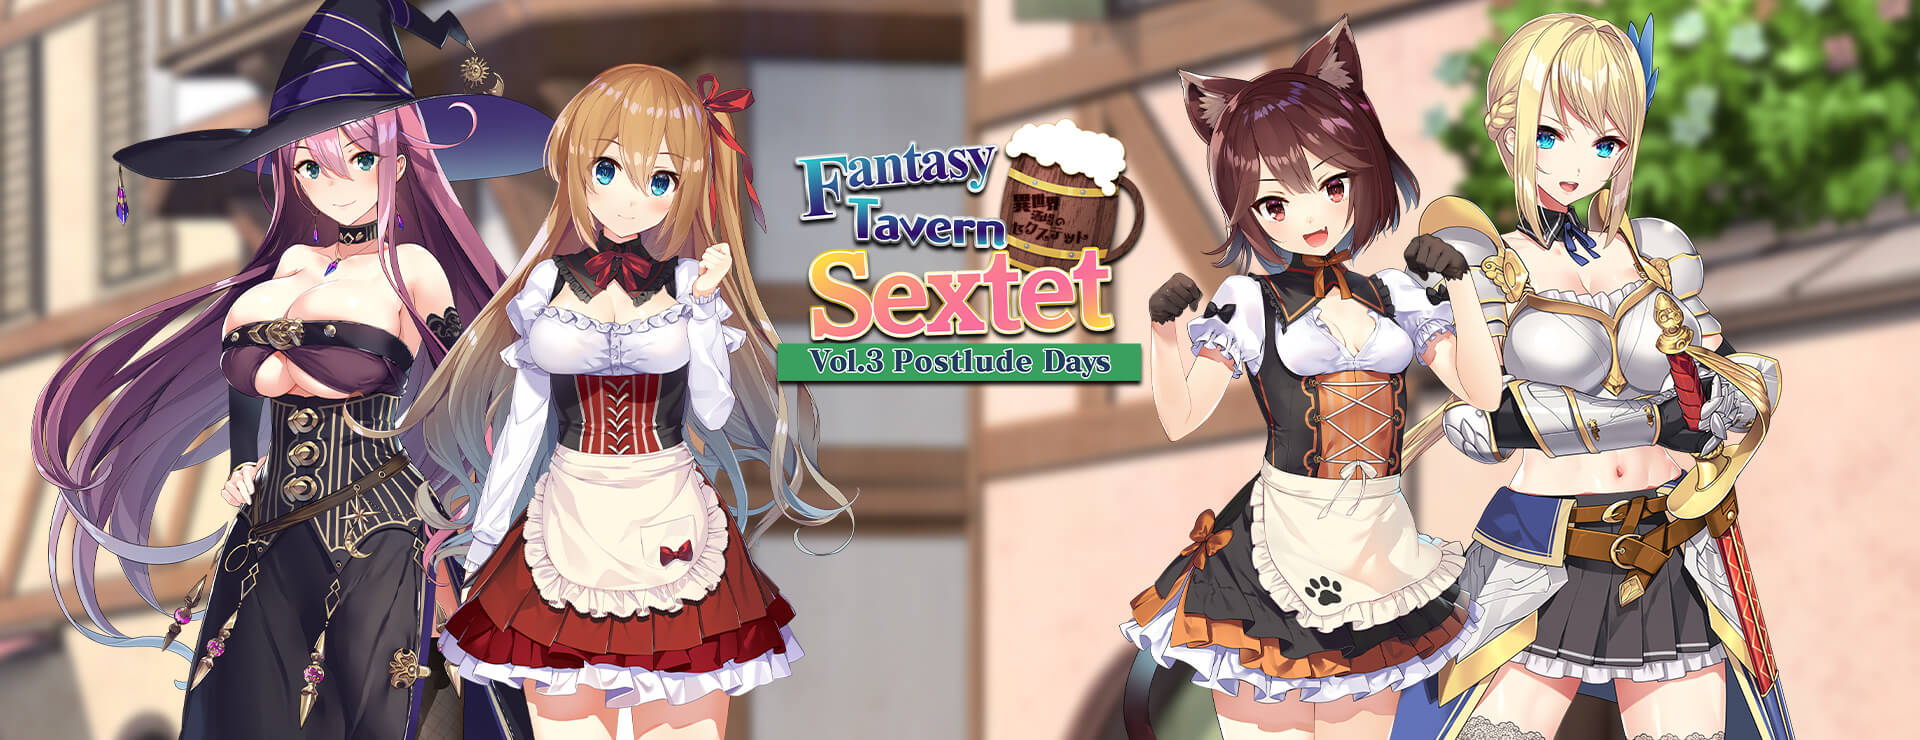 Fantasy Tavern Sextet - Vol.3 Postlude Days - Japanisches Adventure Spiel